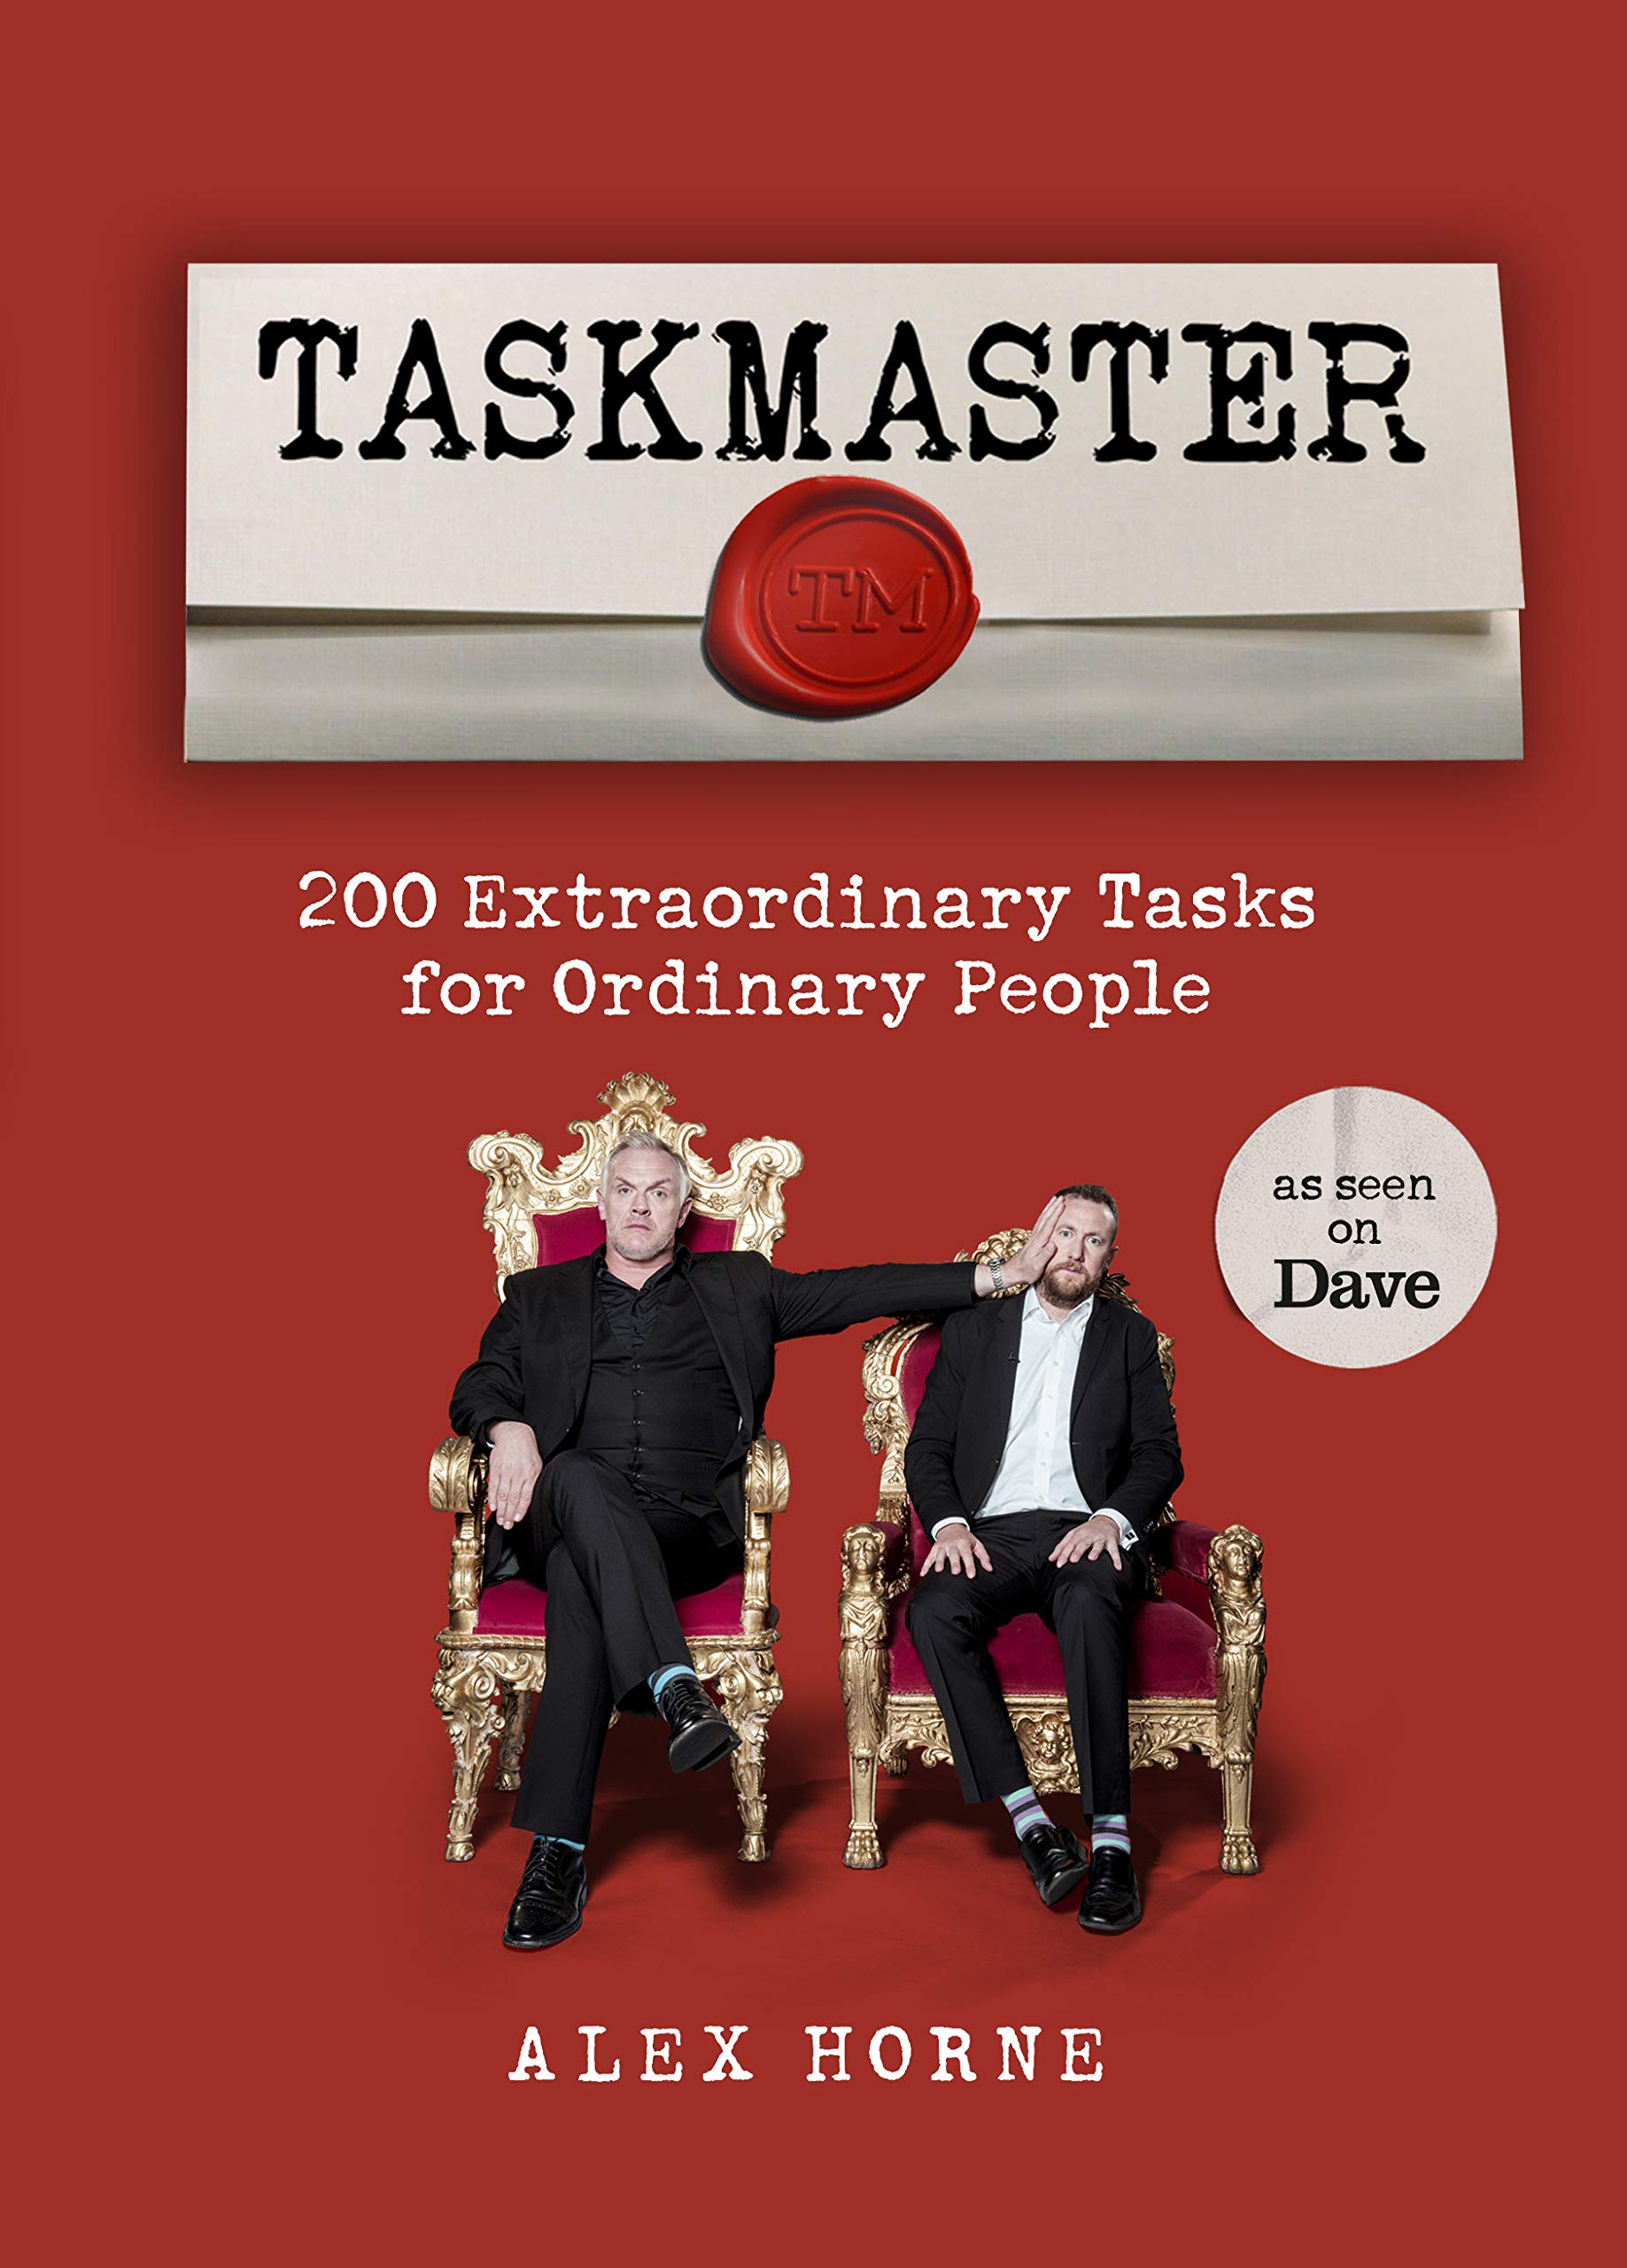 Taskmaster: Extraordinary Tasks for People | Taskmaster Wiki | Fandom